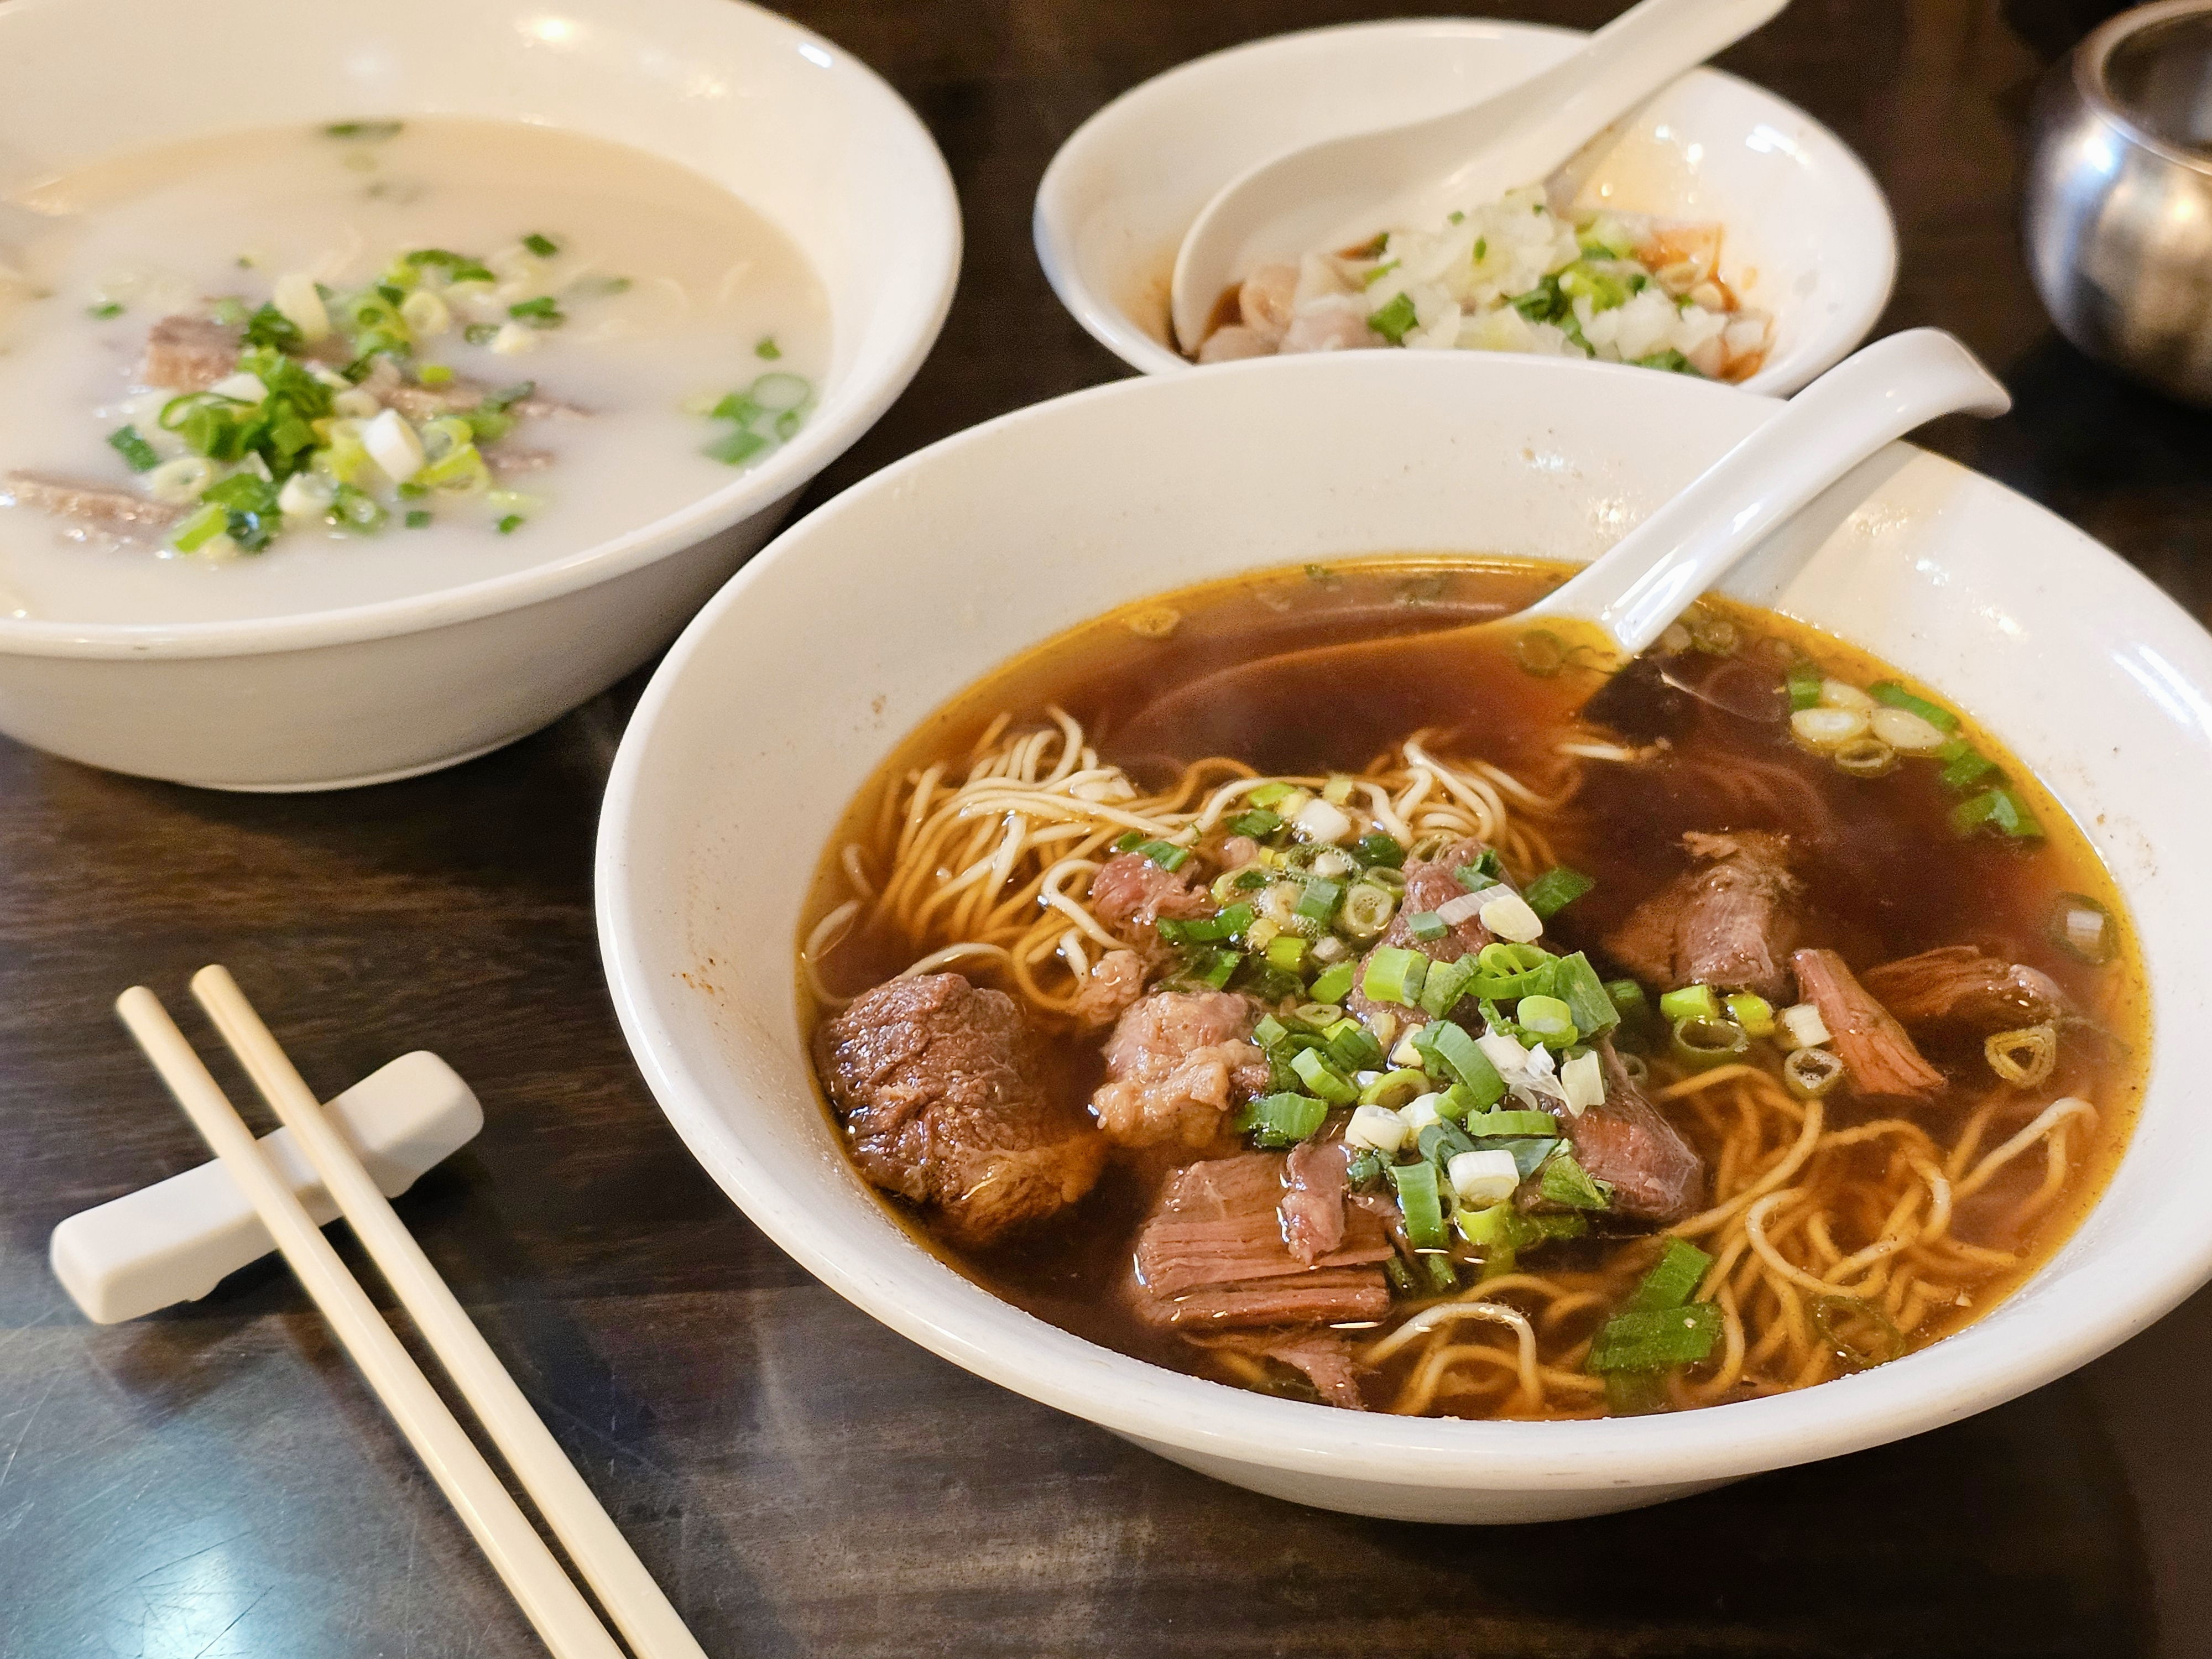 牛肉面是台湾特色小吃之一。记者陈睿中/摄影